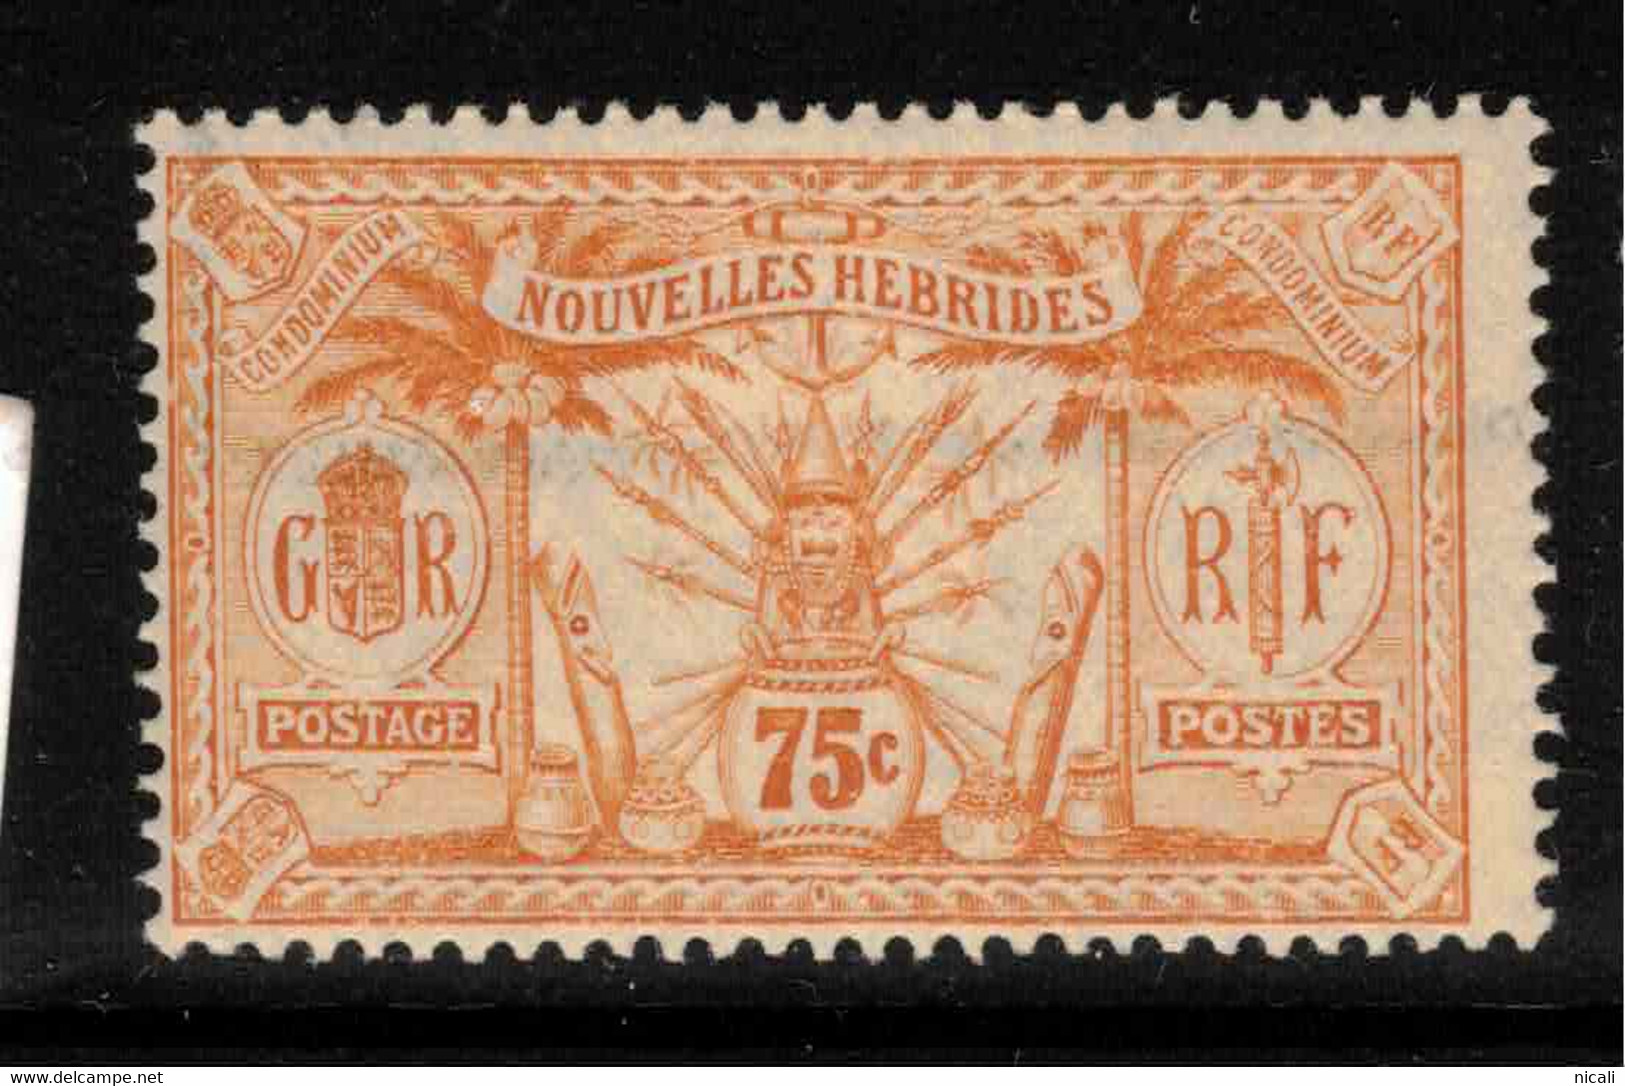 NEW HEBRIDES (FR) 1913 75c Orange SG F29 HM #BAS1 - Unused Stamps